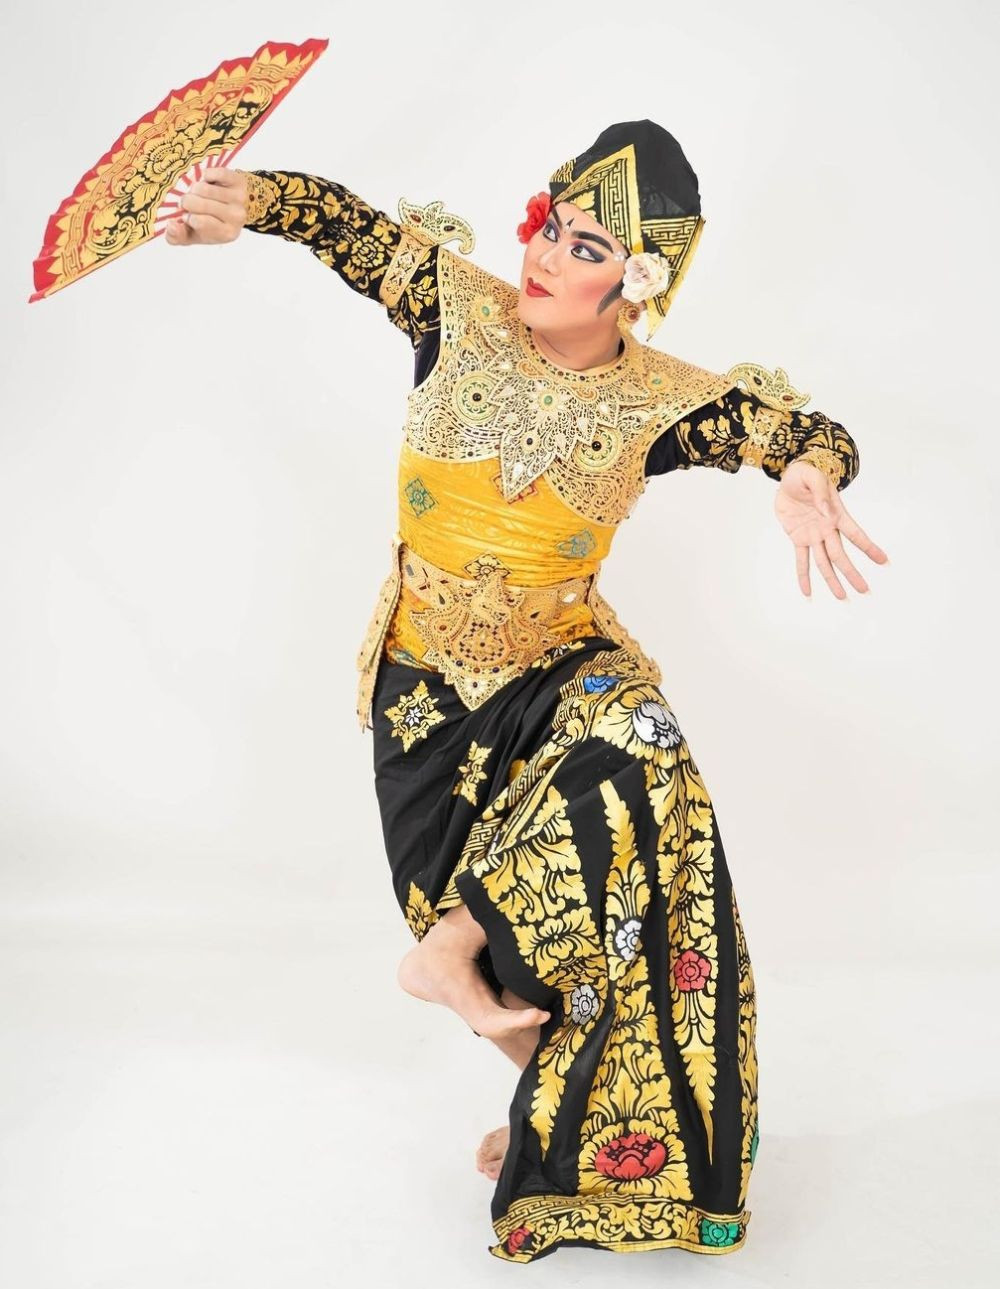 Profil Gung Swara, Koreograf Flower Versi Bali yang Viral